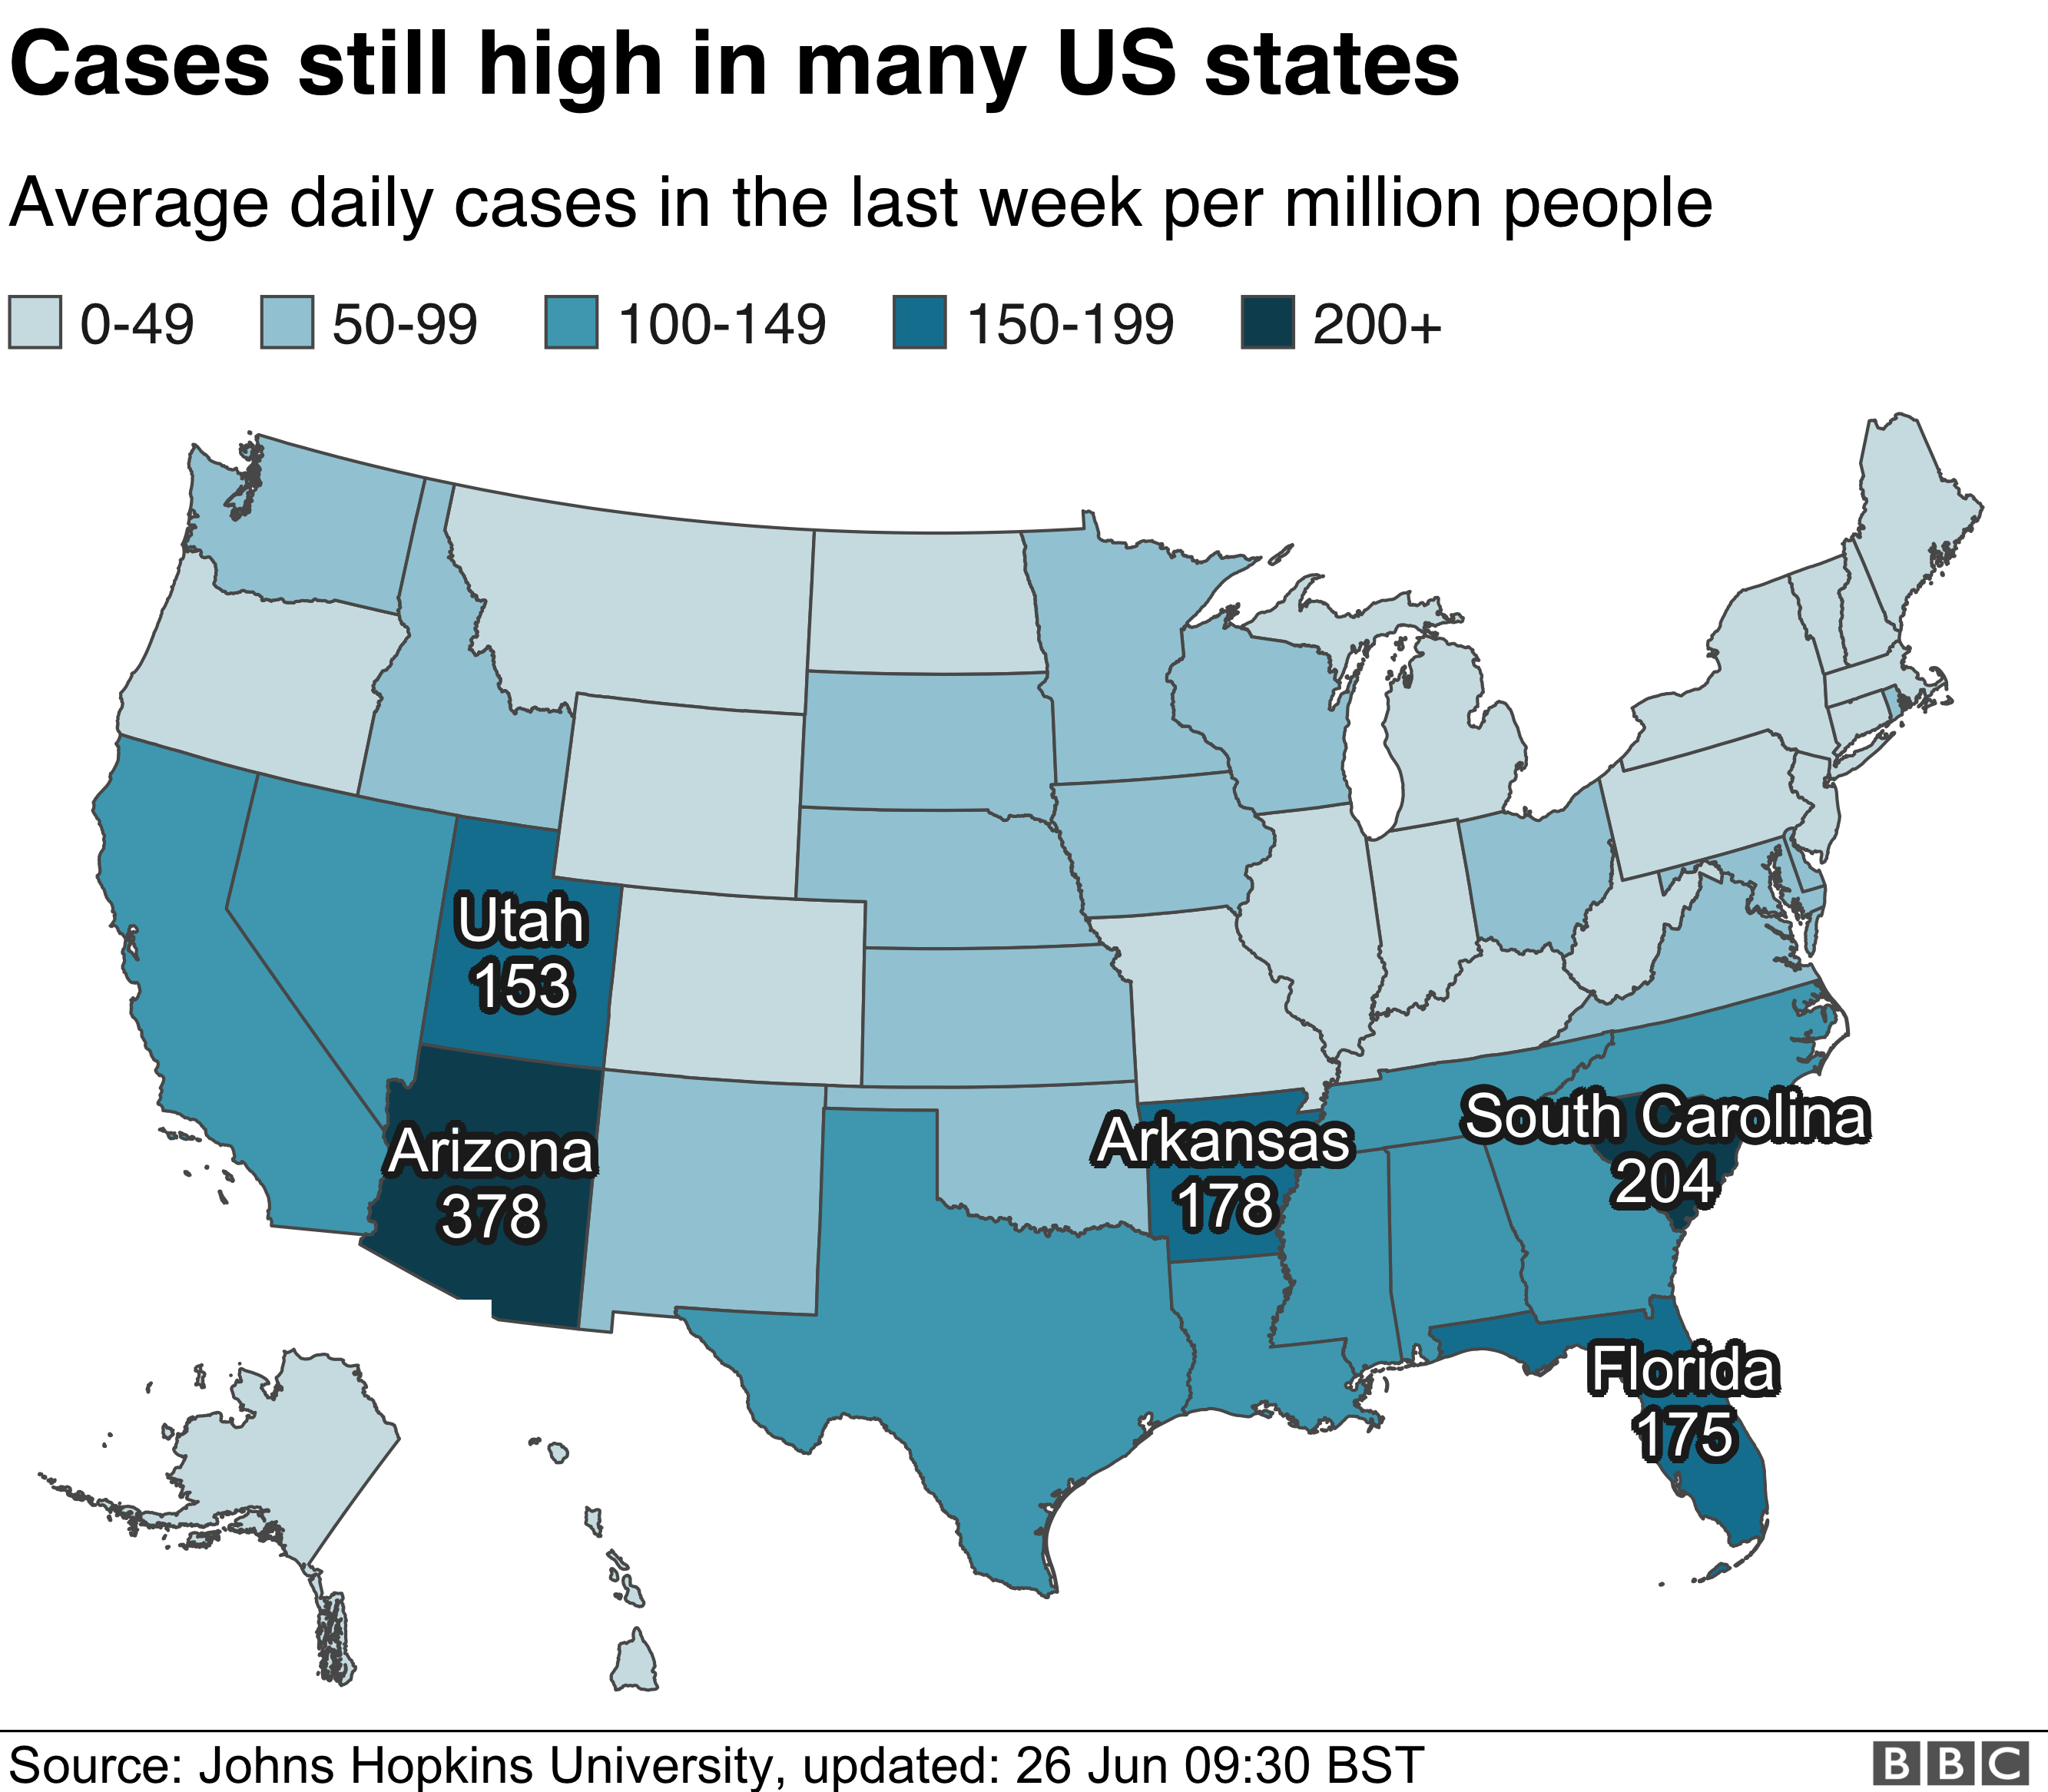 Карта, показывающая штаты с высоким количеством средних еженедельных случаев заболевания на миллион человек